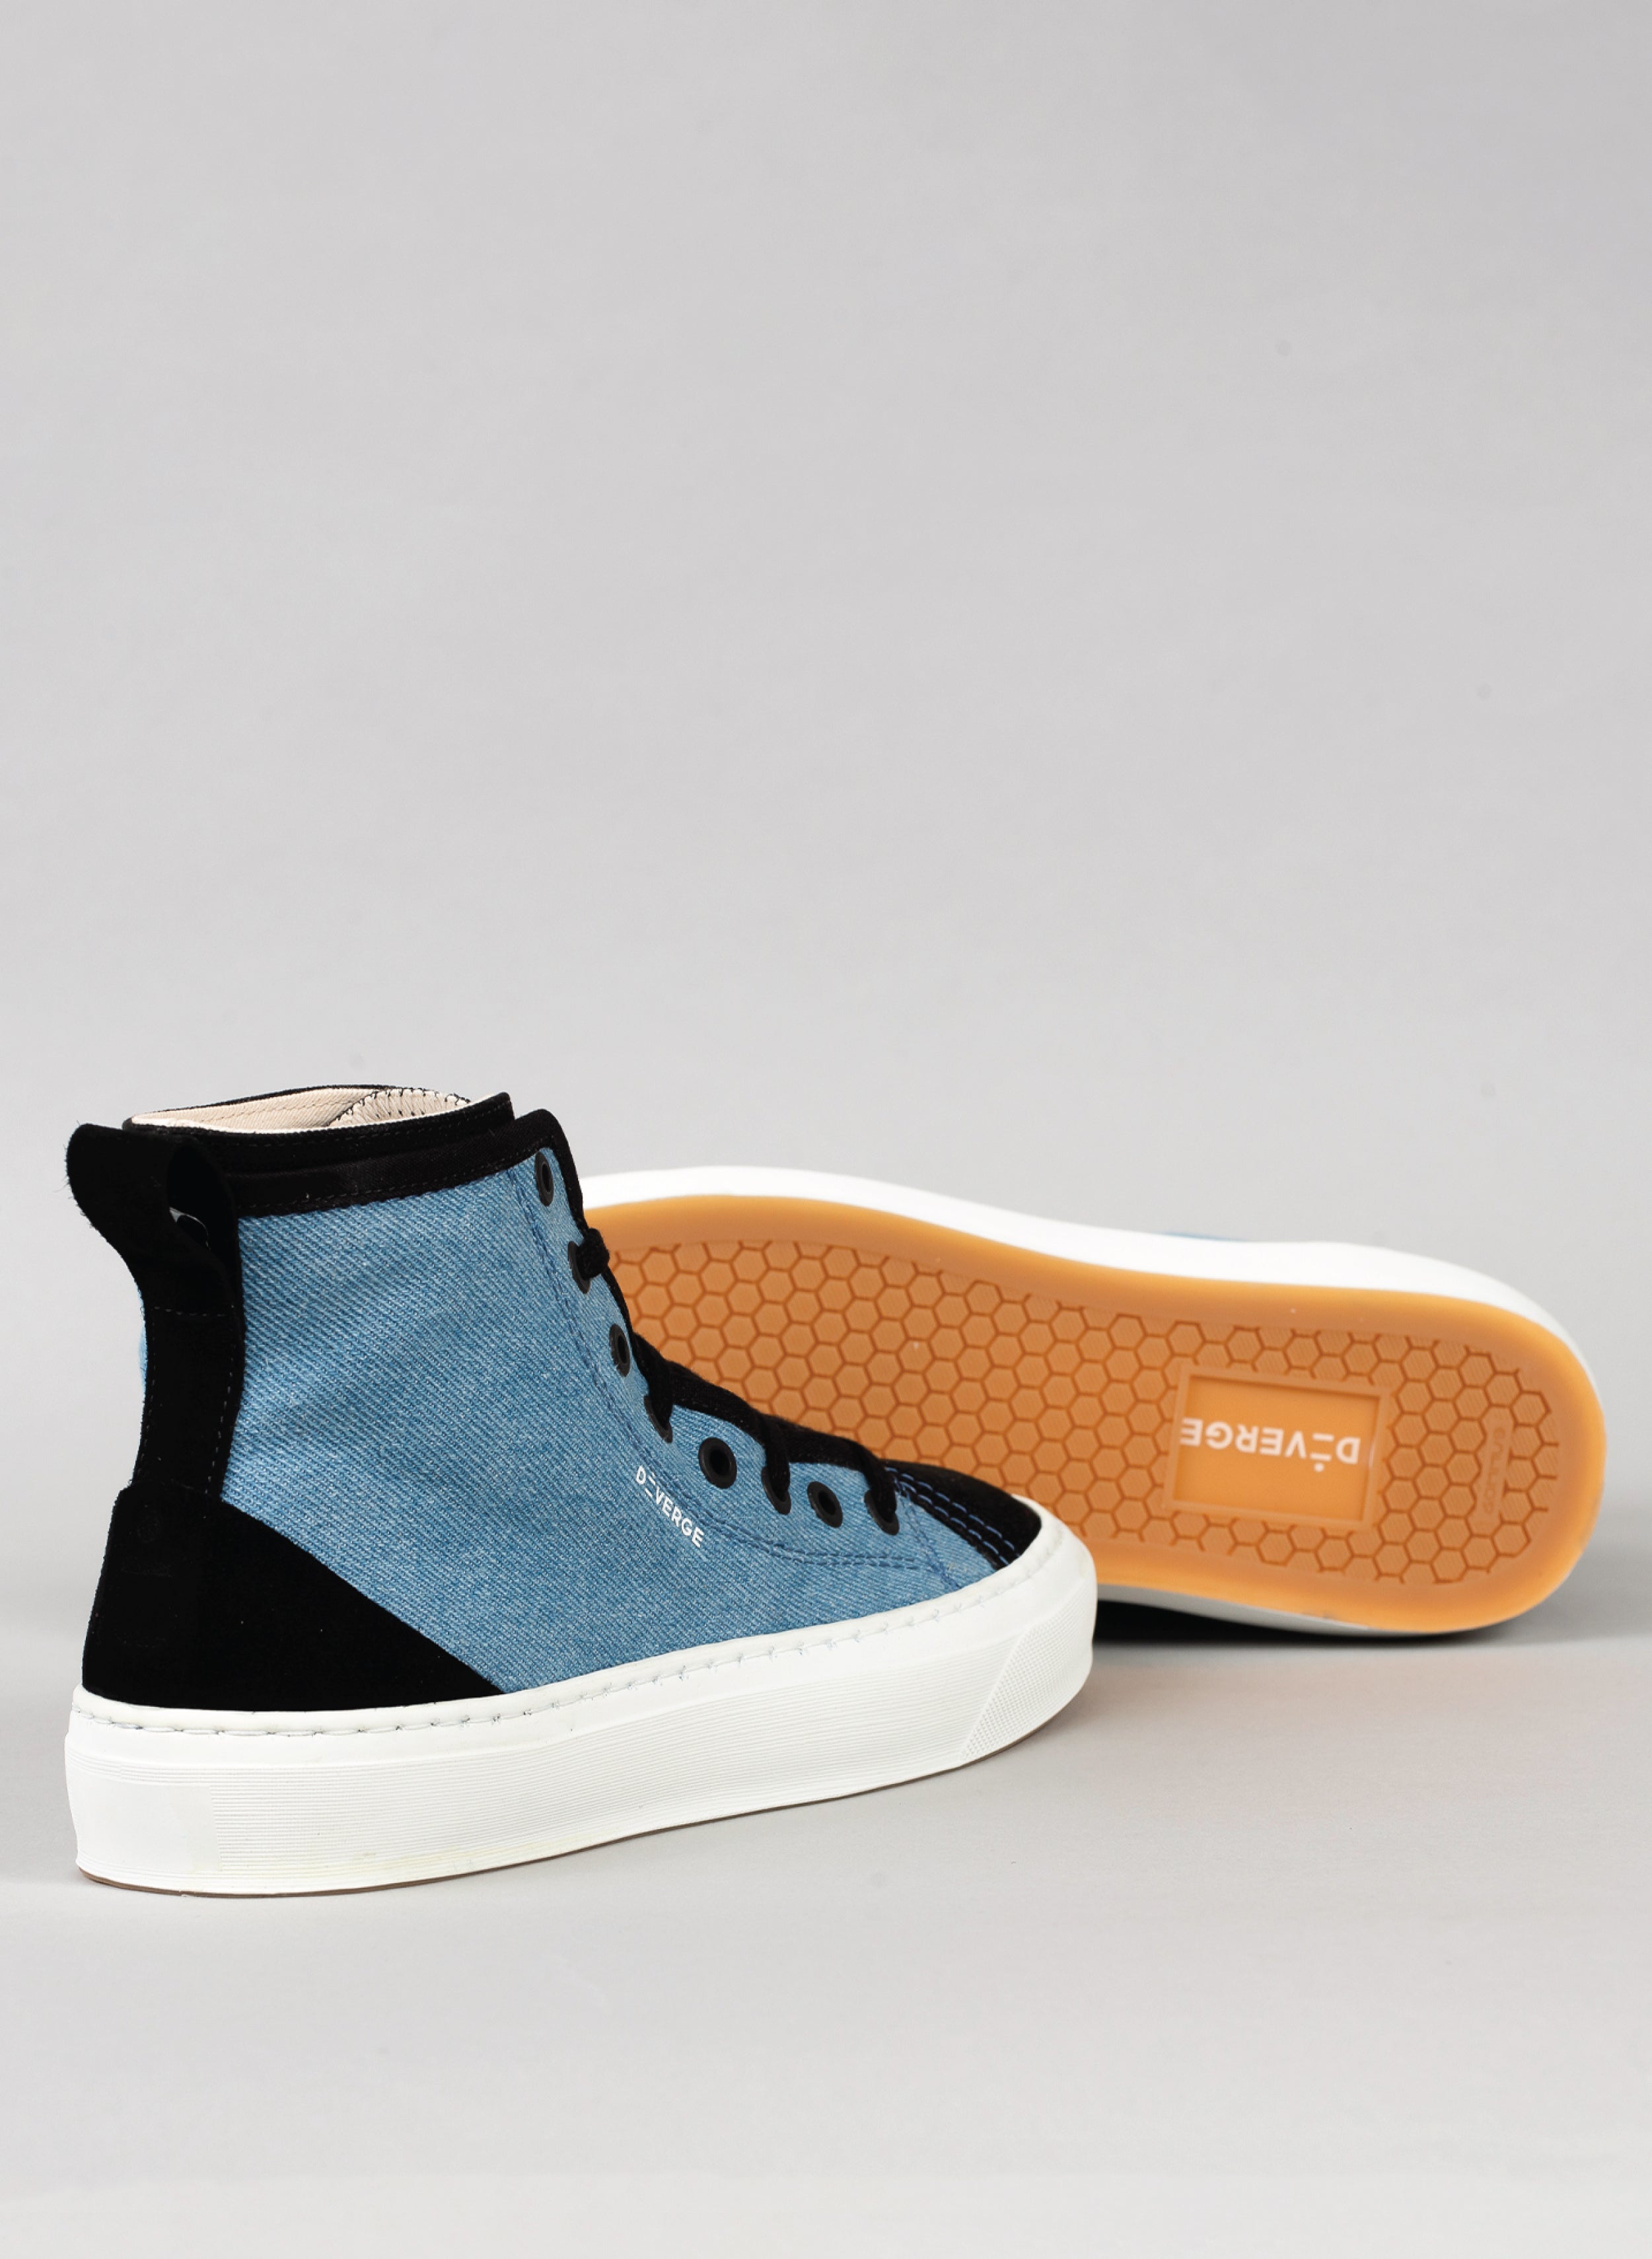 High top negro y vaquero sneakers con suela blanca de Diverge, que promueve el impacto social y el calzado personalizado.